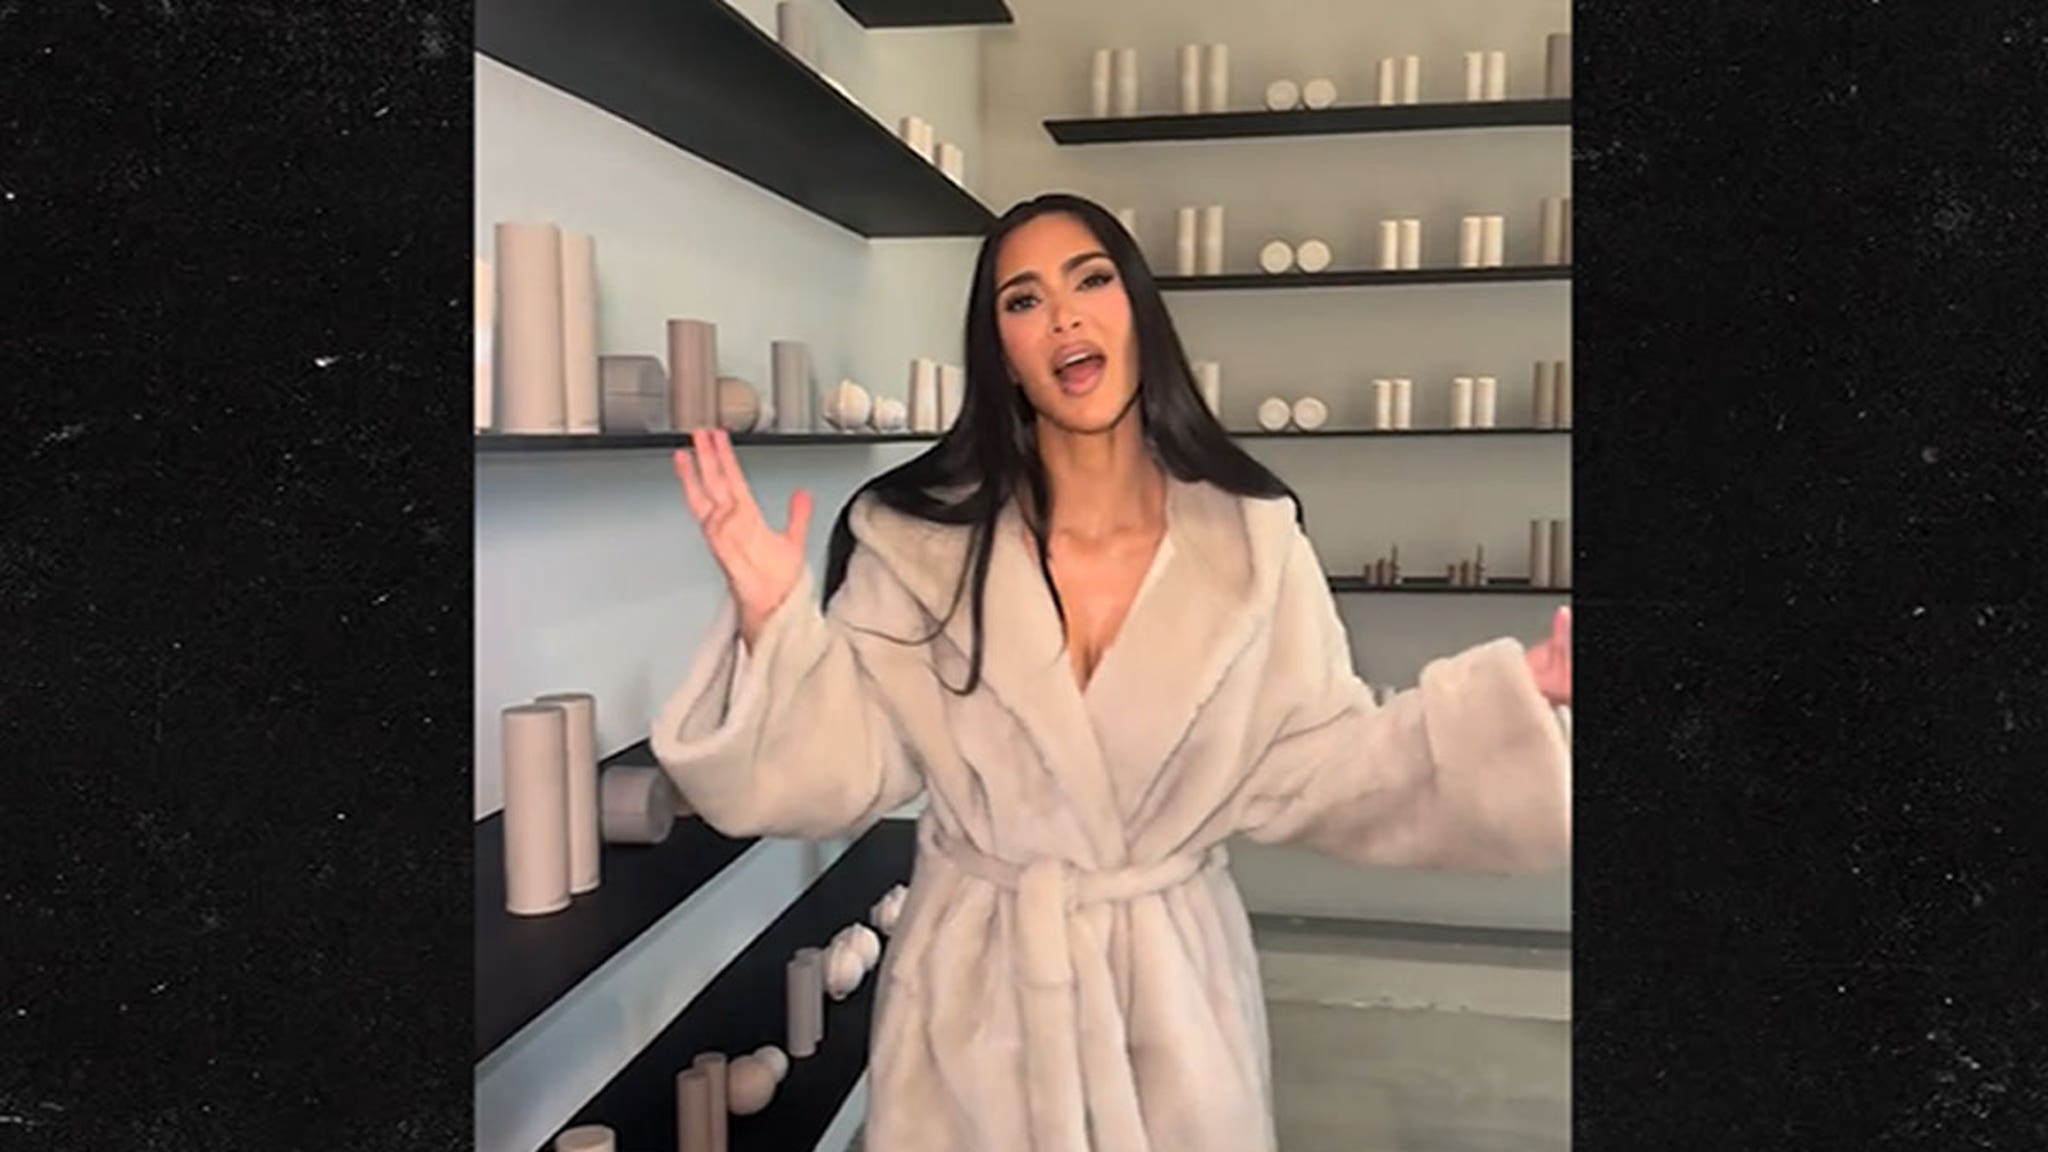 Kim Kardashian rejoint la tendance vidéo « Bien sûr » et fait visiter son bureau